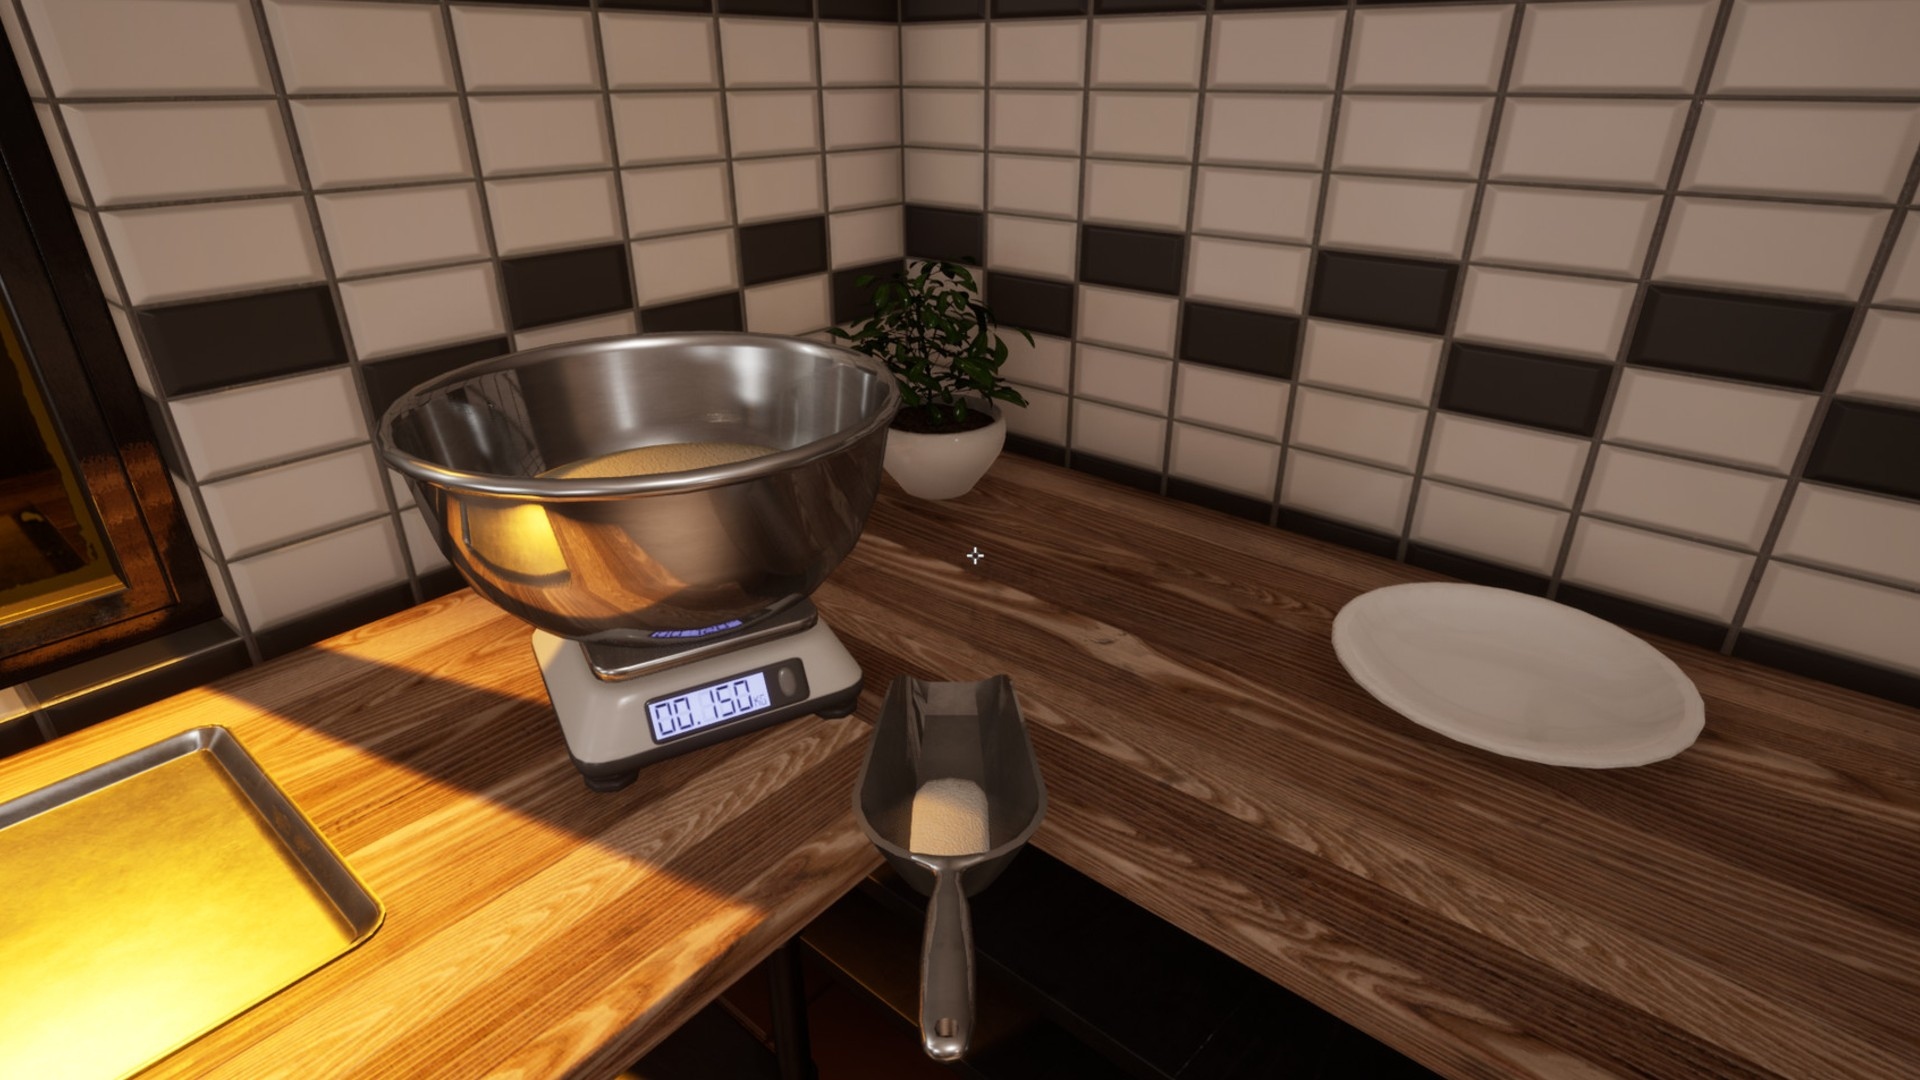 Cooking Simulator, Game Reviews